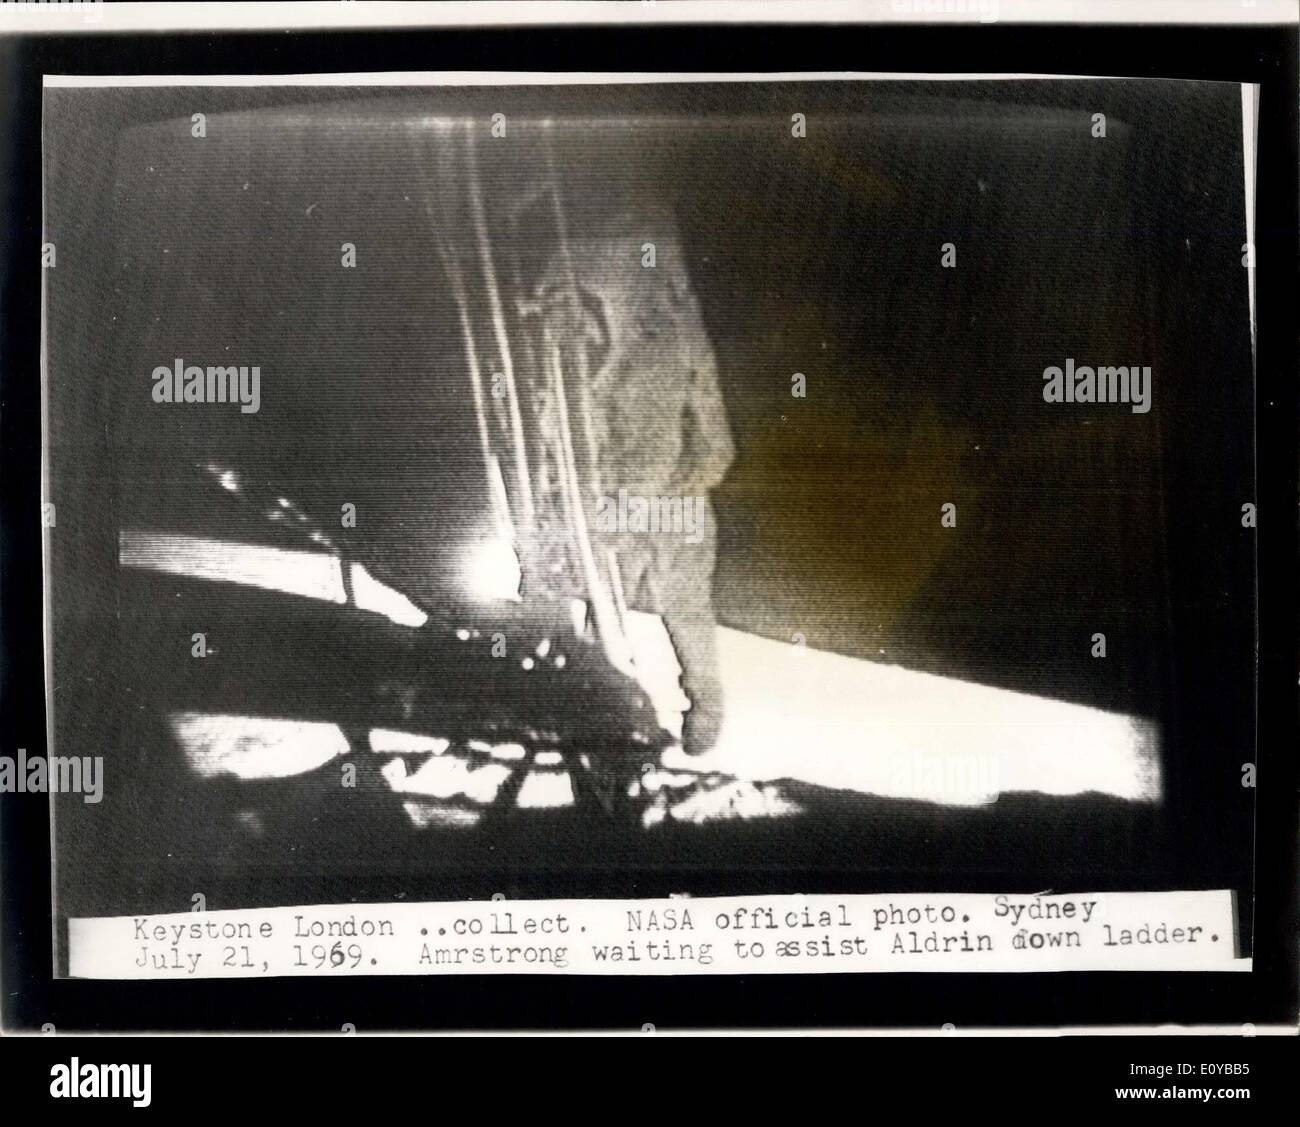 Juillet 21, 1969 - l'homme est sur la Lune : photo montre la photo officielle de la NASA, radiced à Londres de Sydney, Australie, montre l'astronaute américain Neil Armstrong en attente d'aider le colonel l'aldrine dans l'échelle lors de l'alunissage d'épique. Banque D'Images